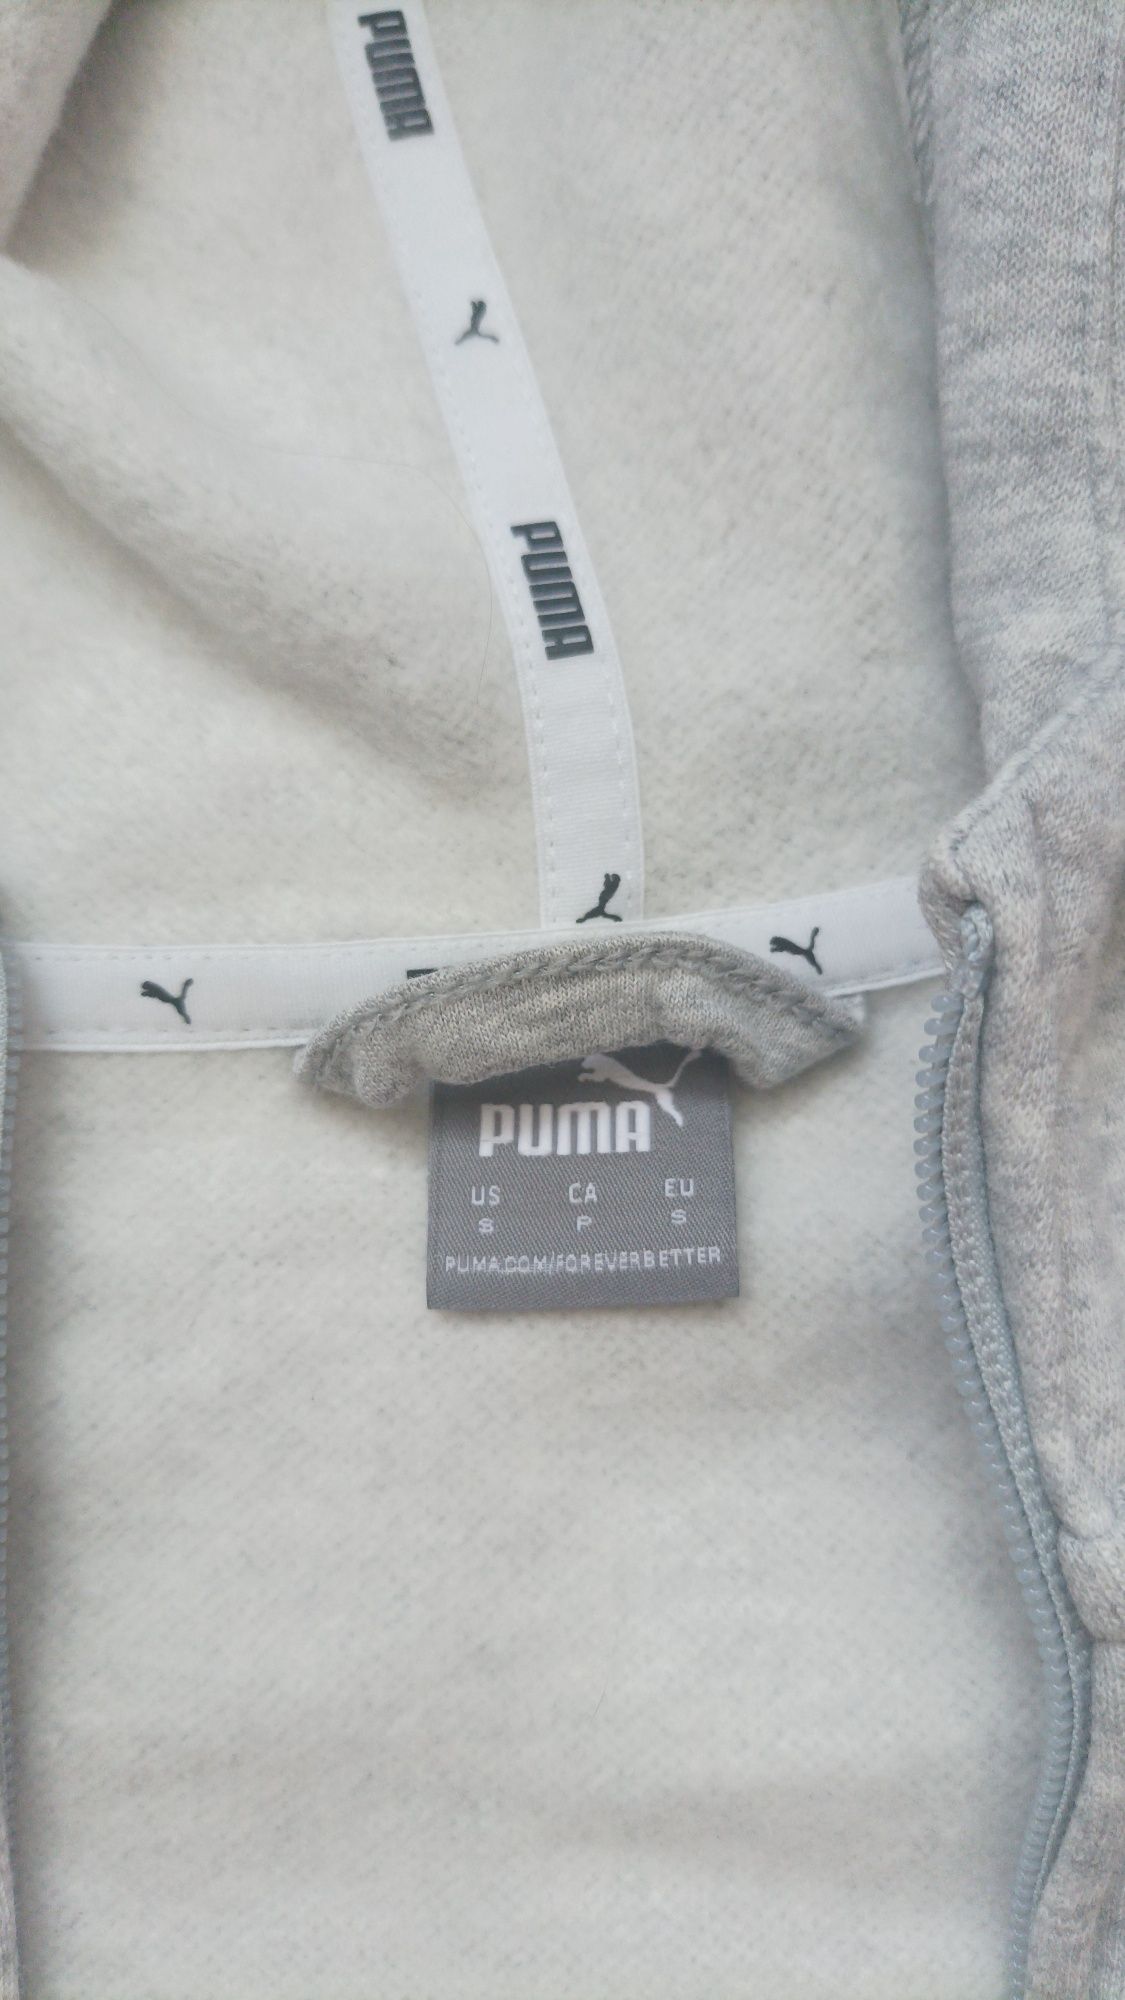 Sprzedam markową bluzę marki Puma - nowa.